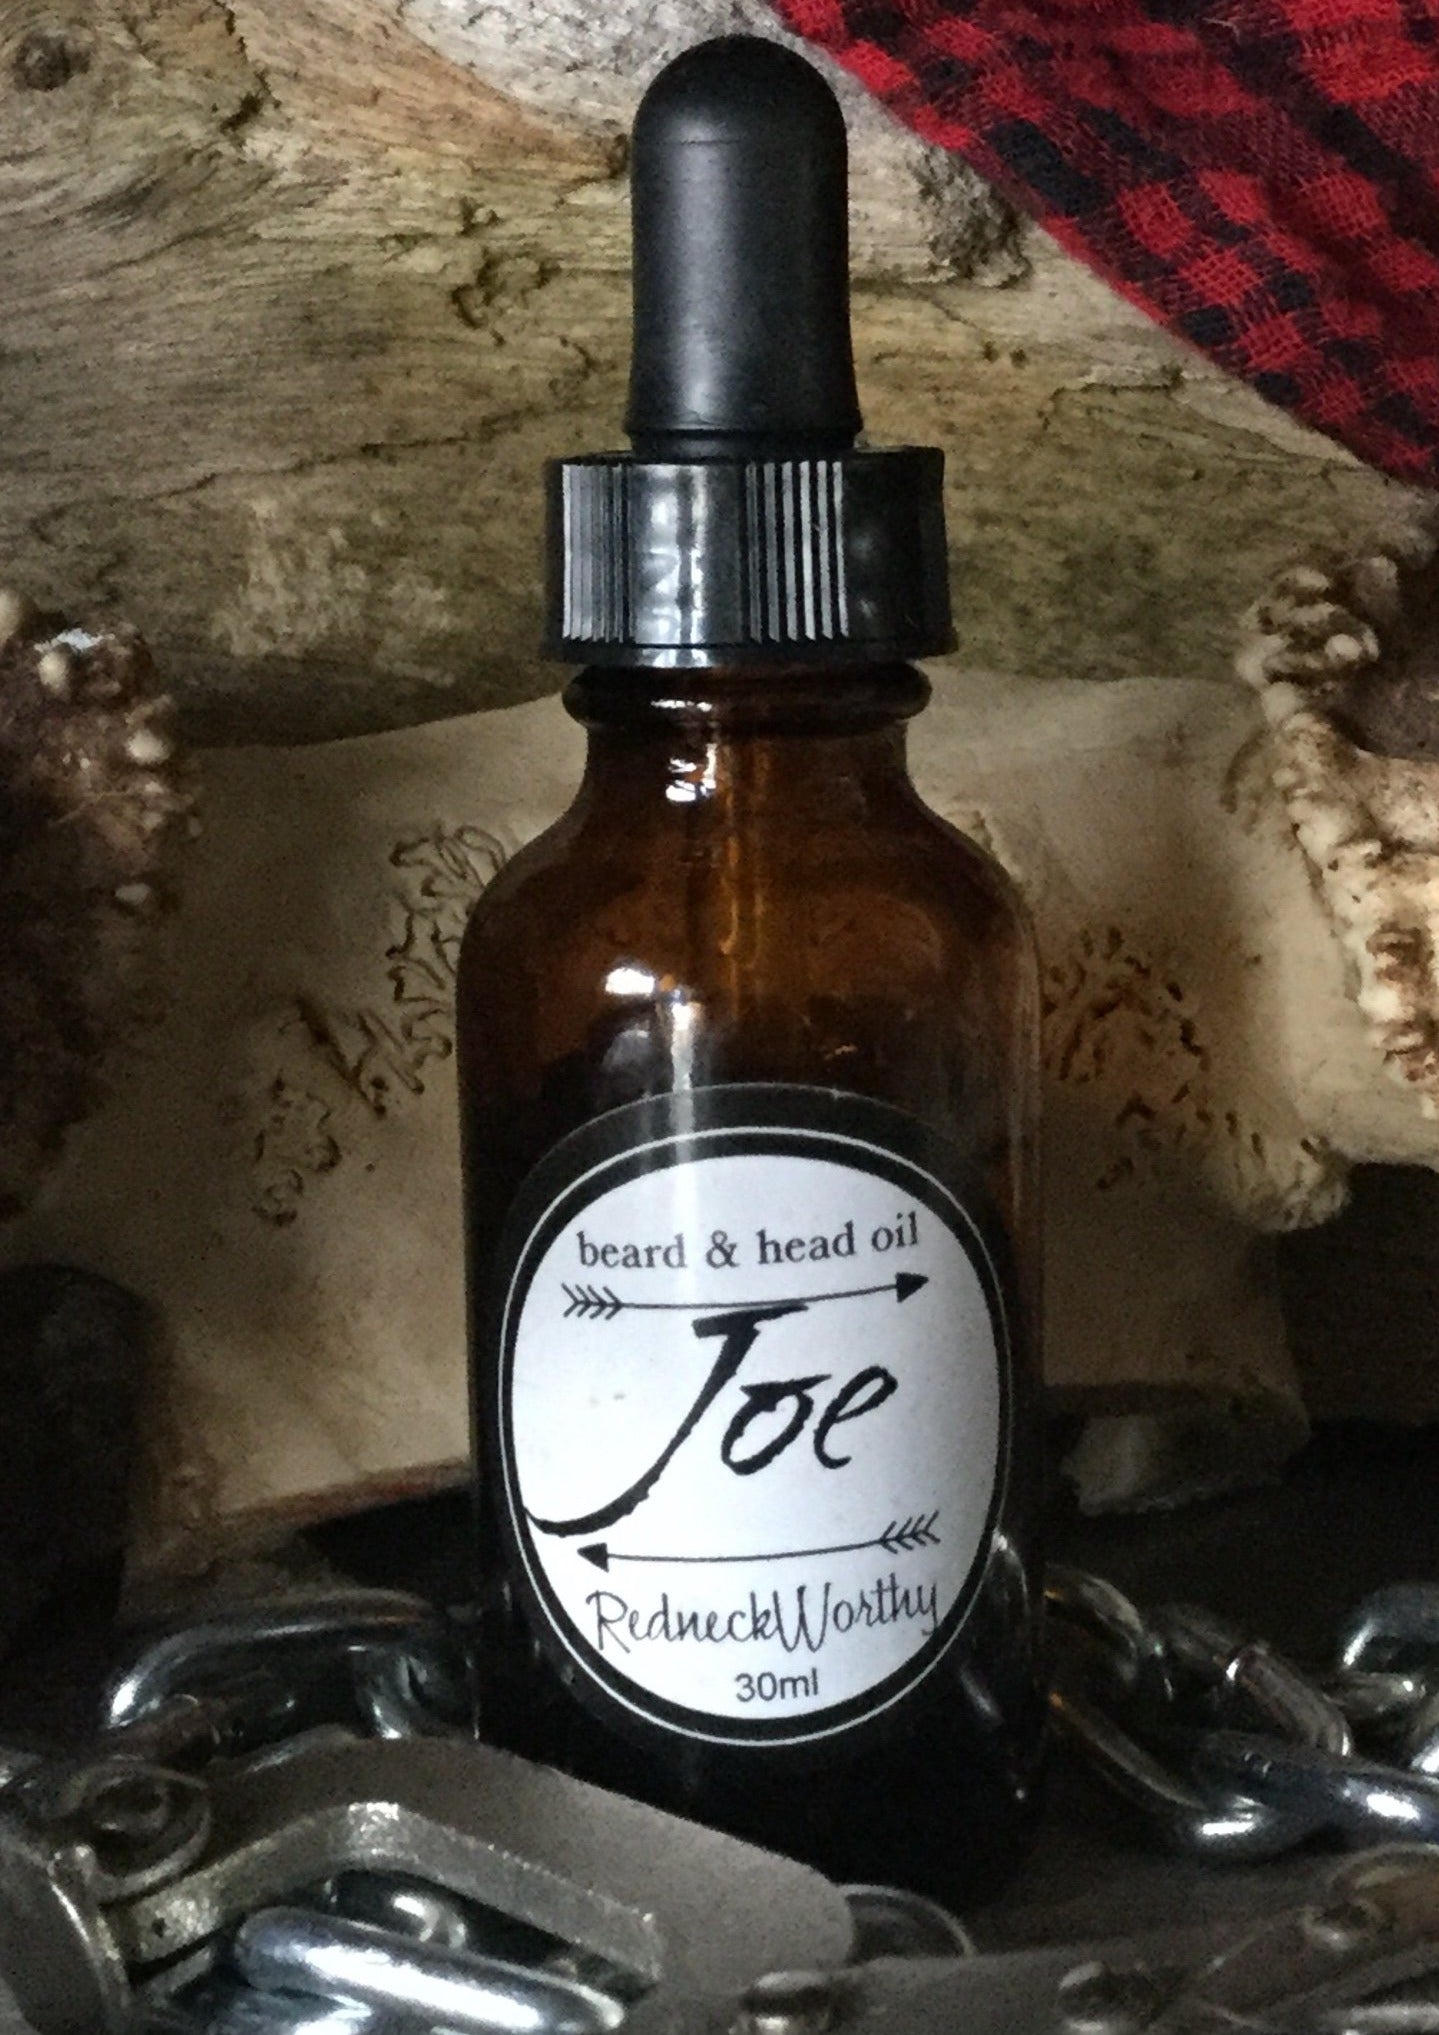 Joe beard oil